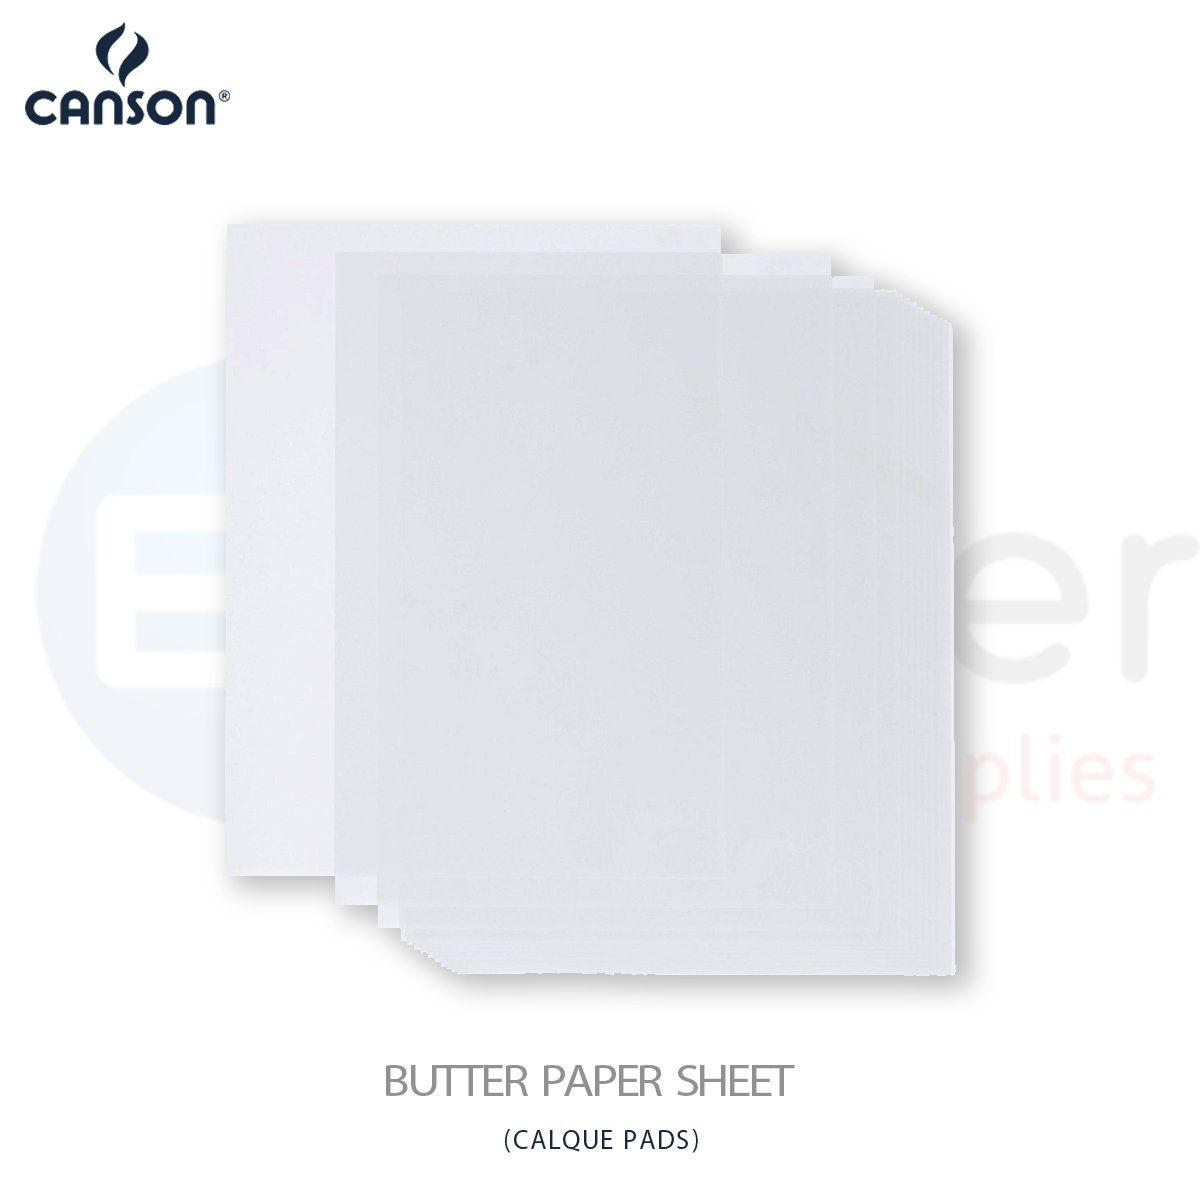 +Canson calque paper,50/55gr,70x100cm,250sh/pack.